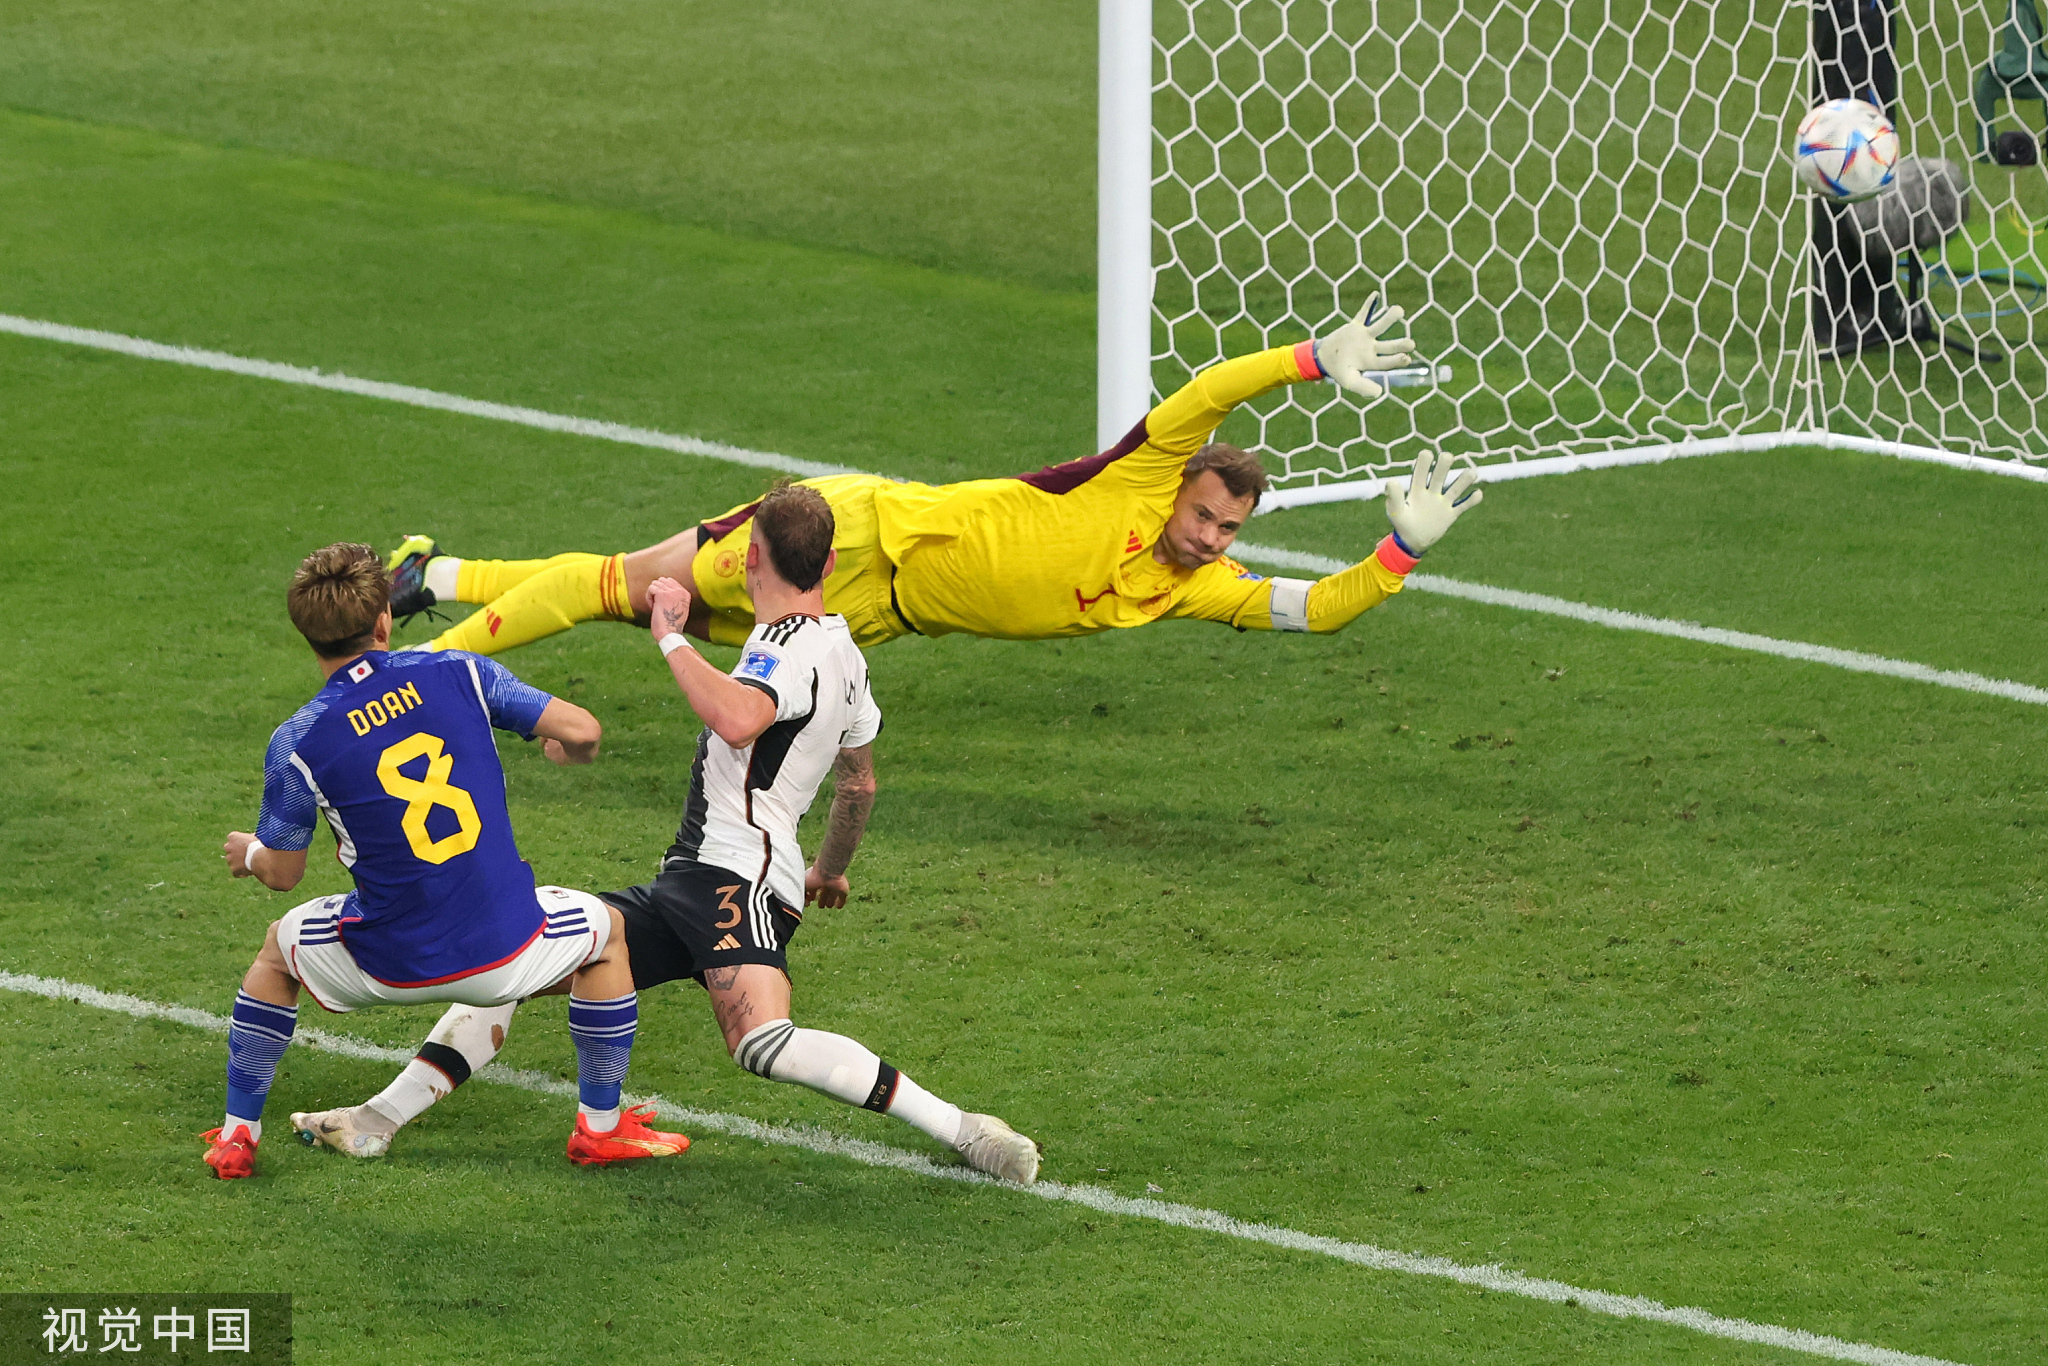 日本与德国这场比赛中有一个画面让我印象深刻